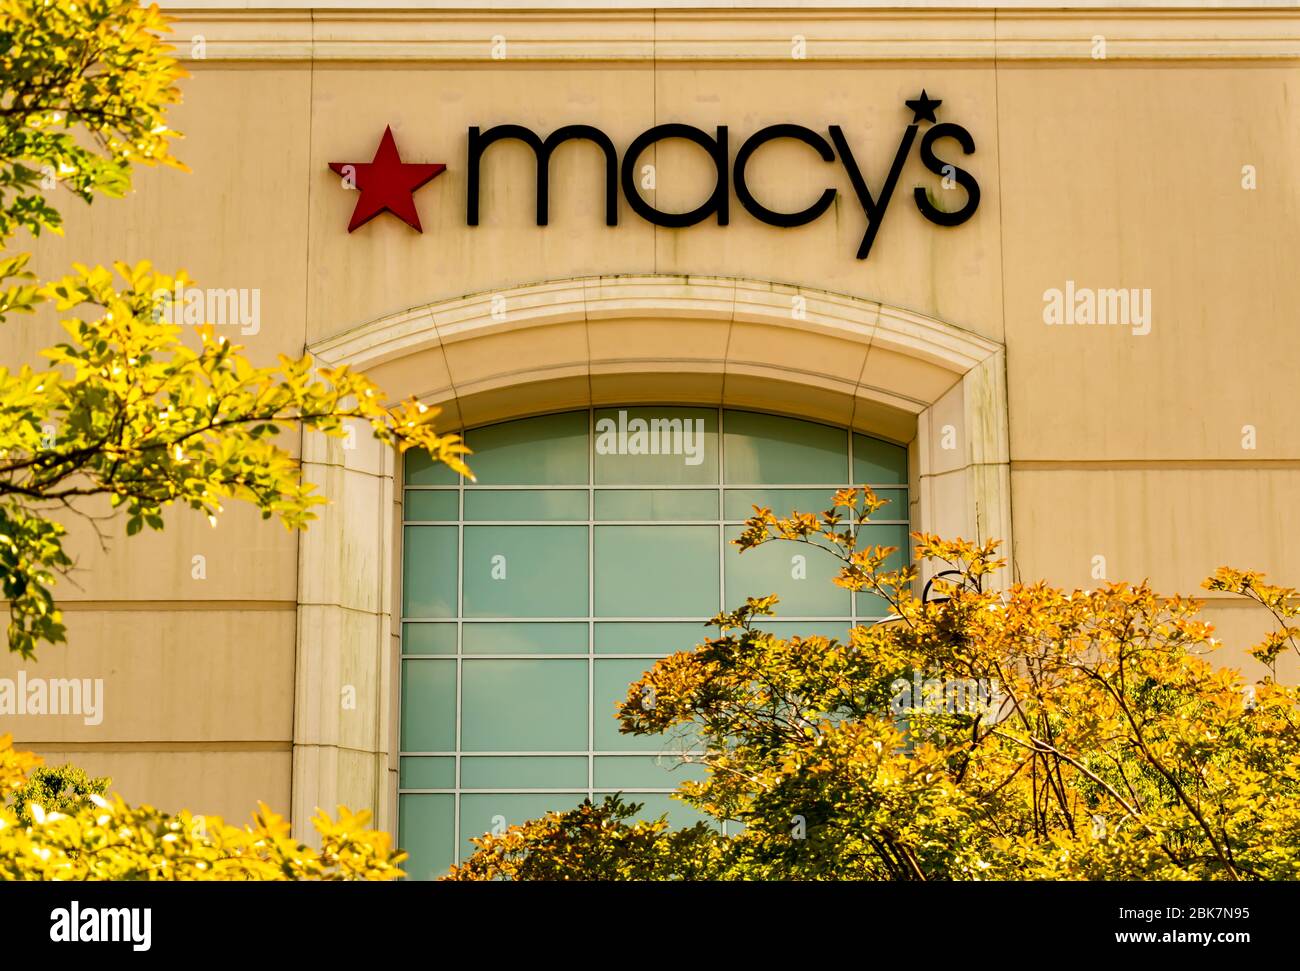 Charlotte, NC/USA - 7. Juli 2019: Horizontales, mittleres Nahaufnahme des Kaufhauses 'Macy's' mit Marke und Logo in Rot und Schwarz auf dem Gebäude. Stockfoto